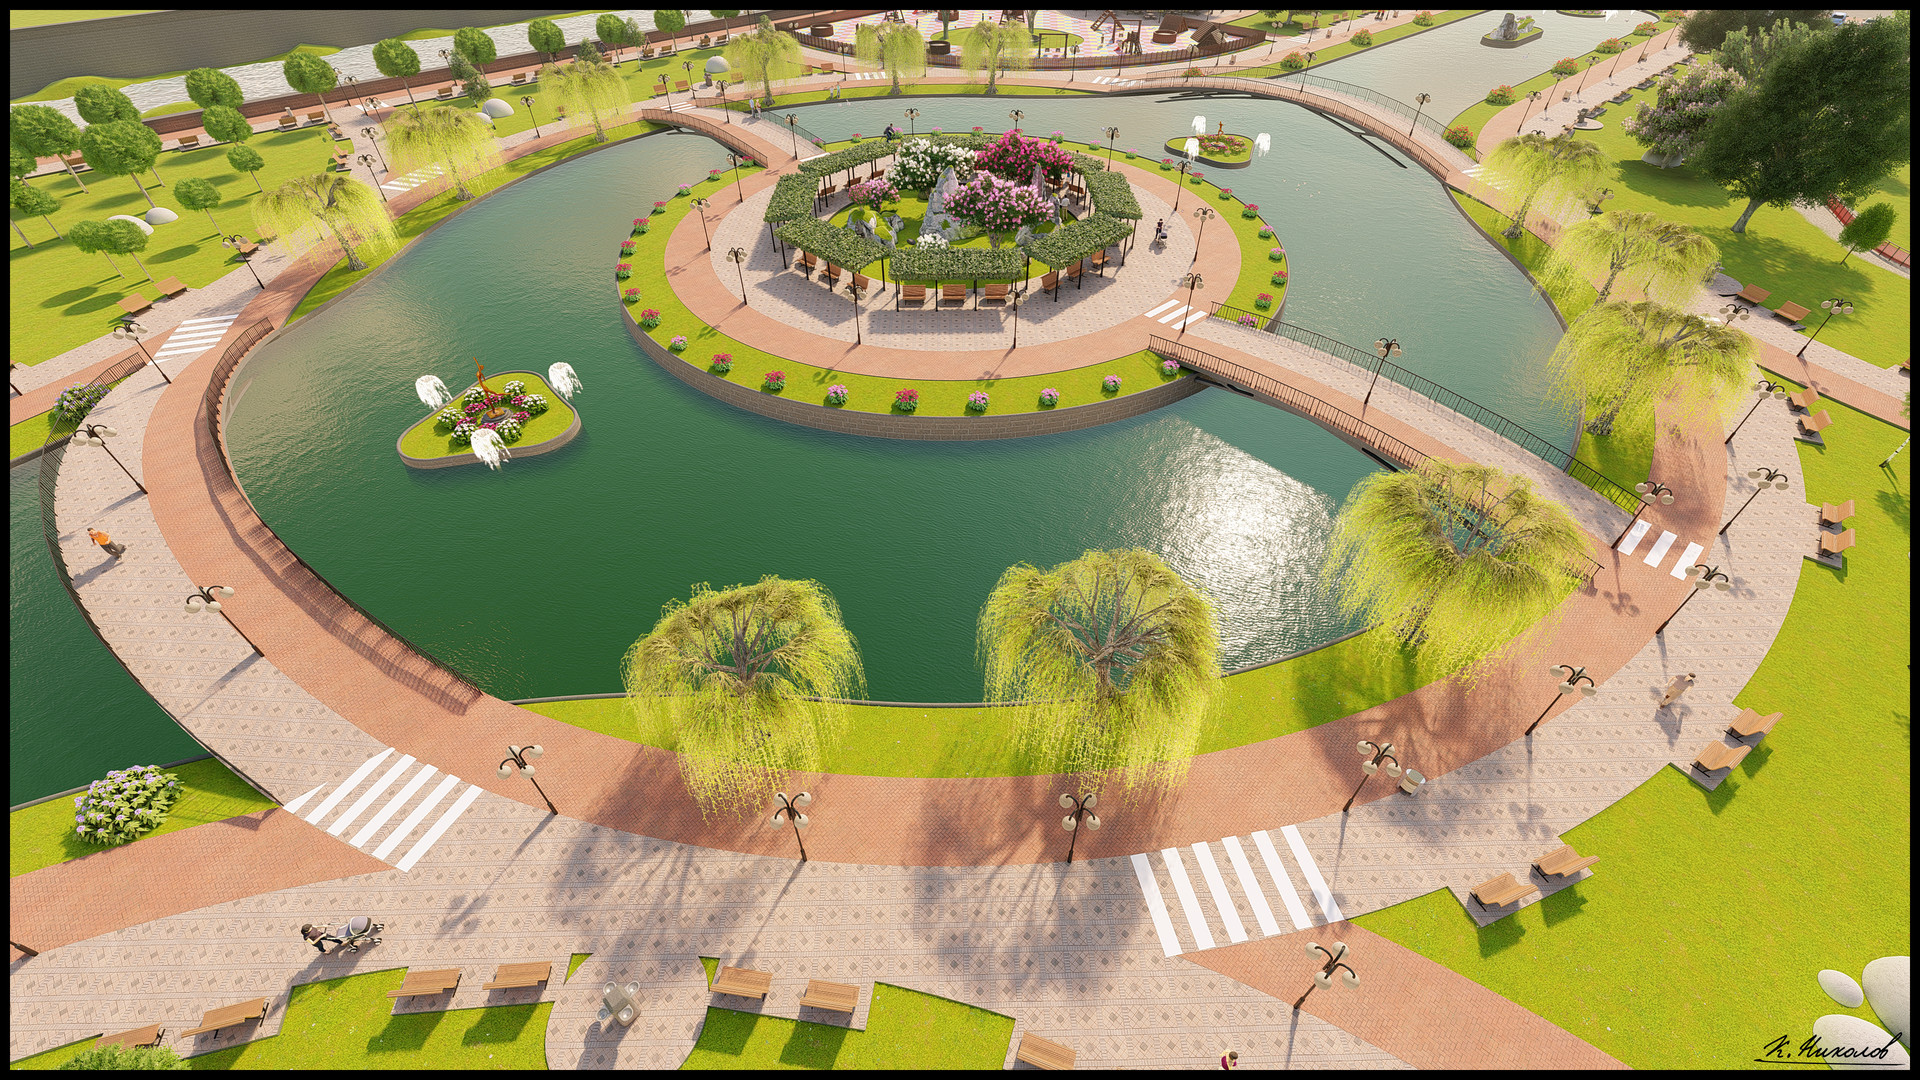 Виды парков. Озеленение парка Абу Даби. Адхари парк в Бахрейне. Проекты парков. Современный парк с прудом.